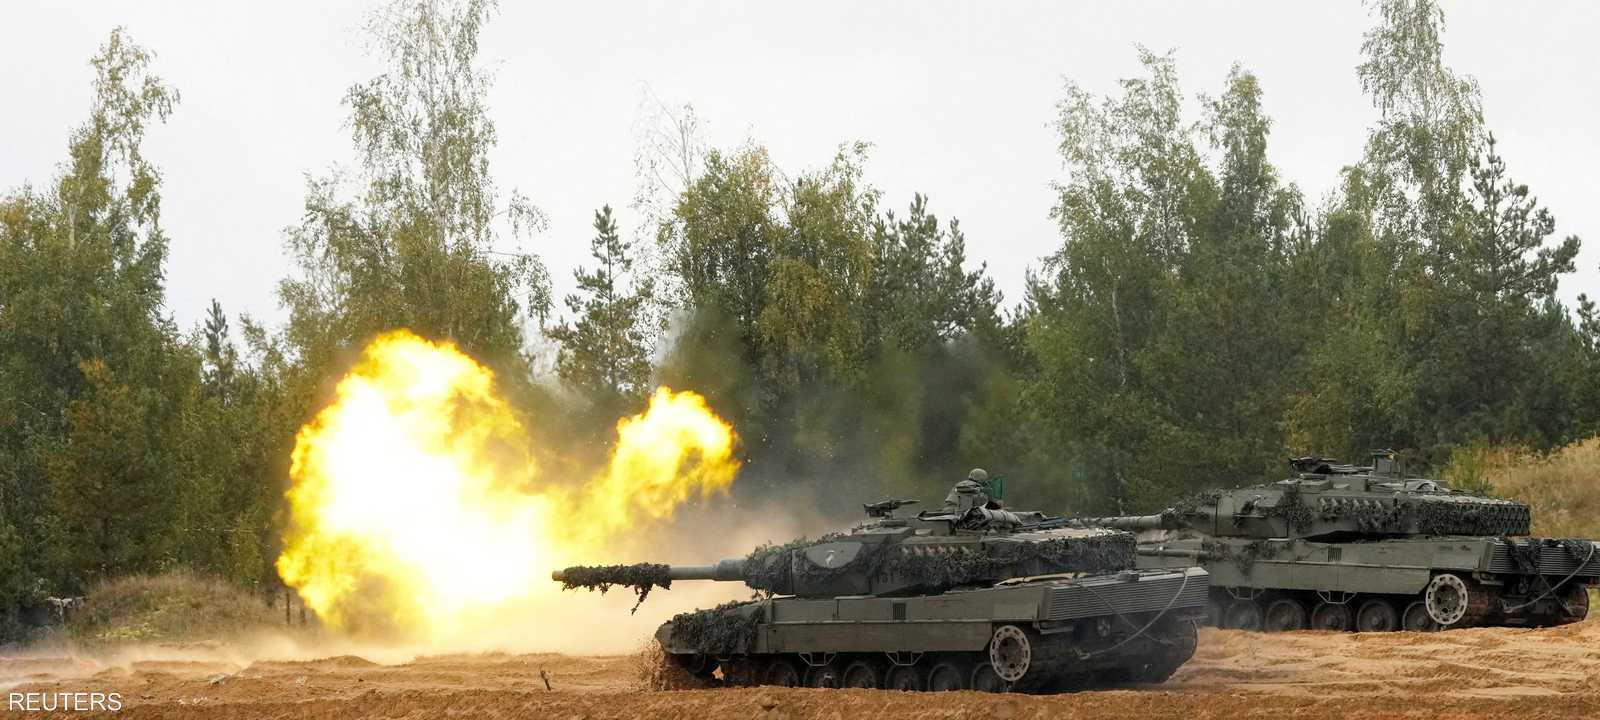 الدبابة "ليوبارد" مطلوبة بقوة في أوكرانيا